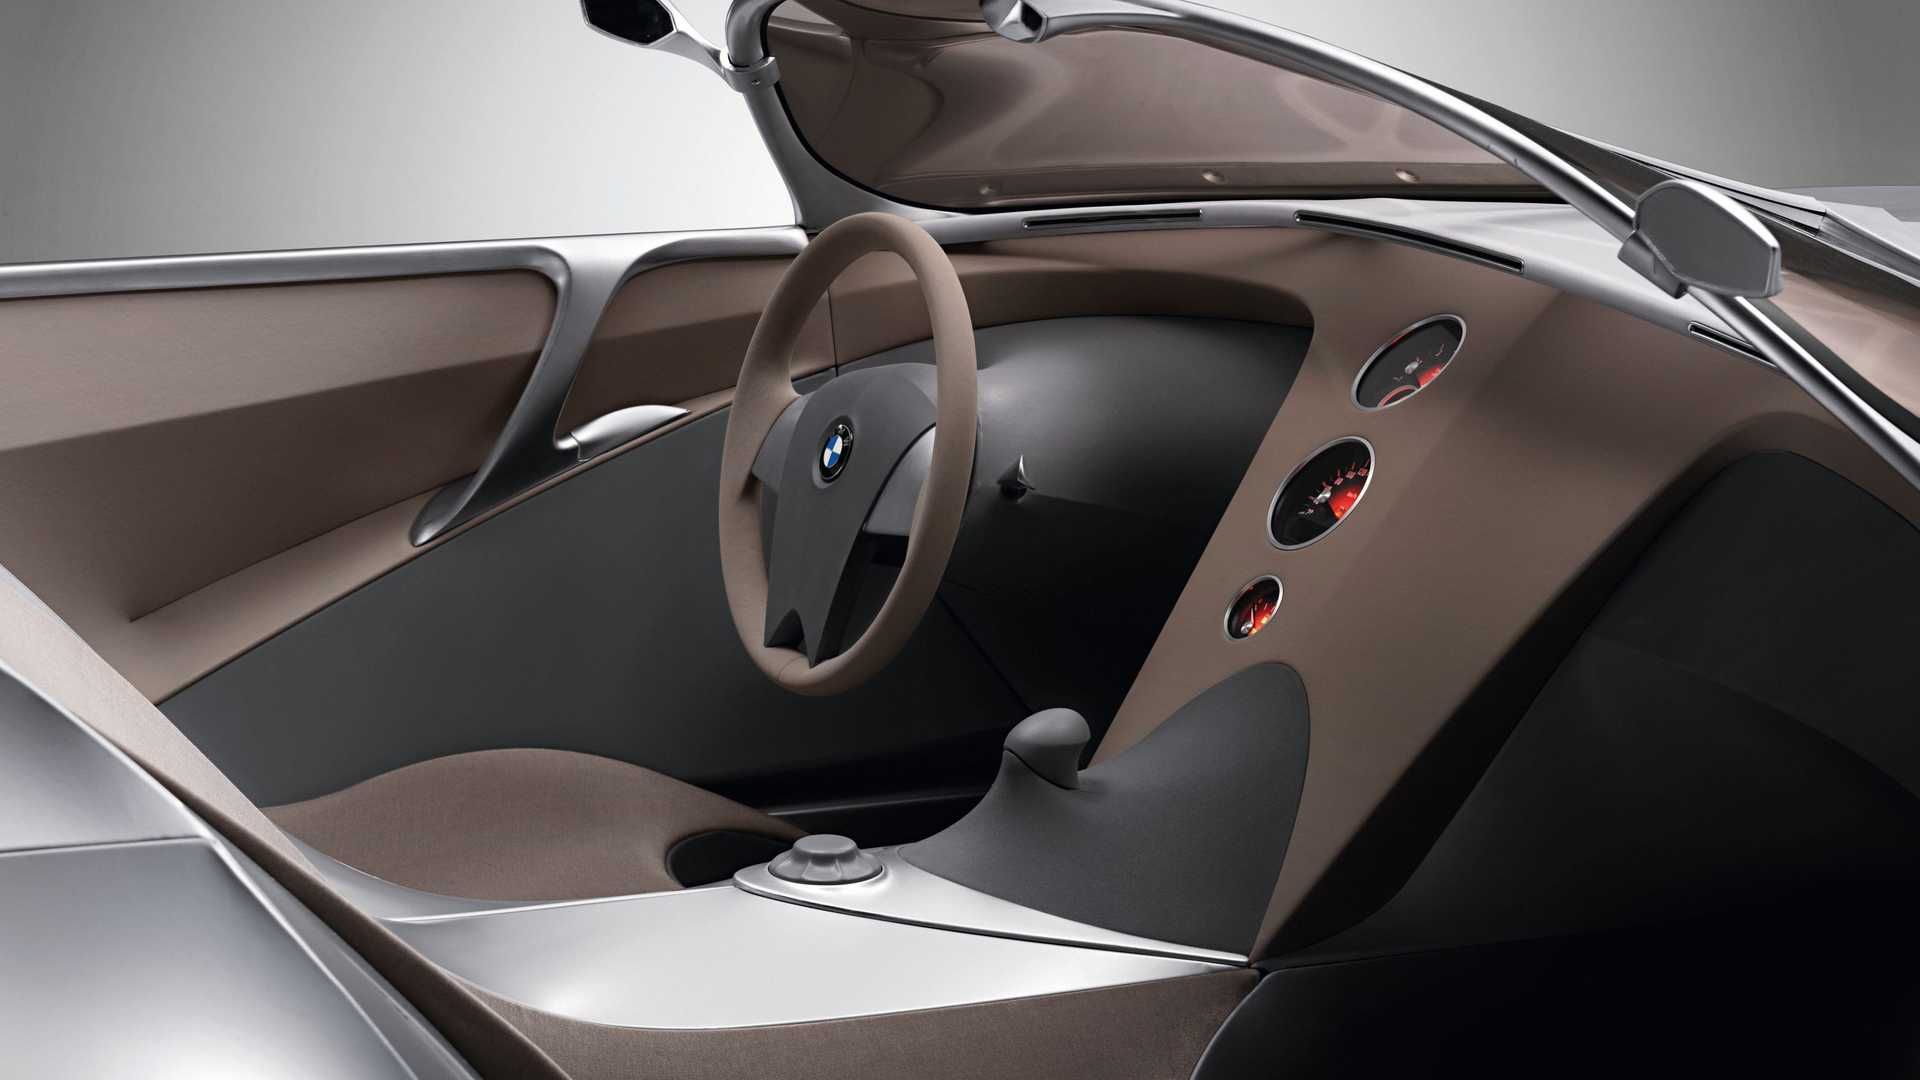 مرجع متخصصين ايران كابين خودروي مفهومي روباز بي ام و گينا / BMW GINA concept convertible